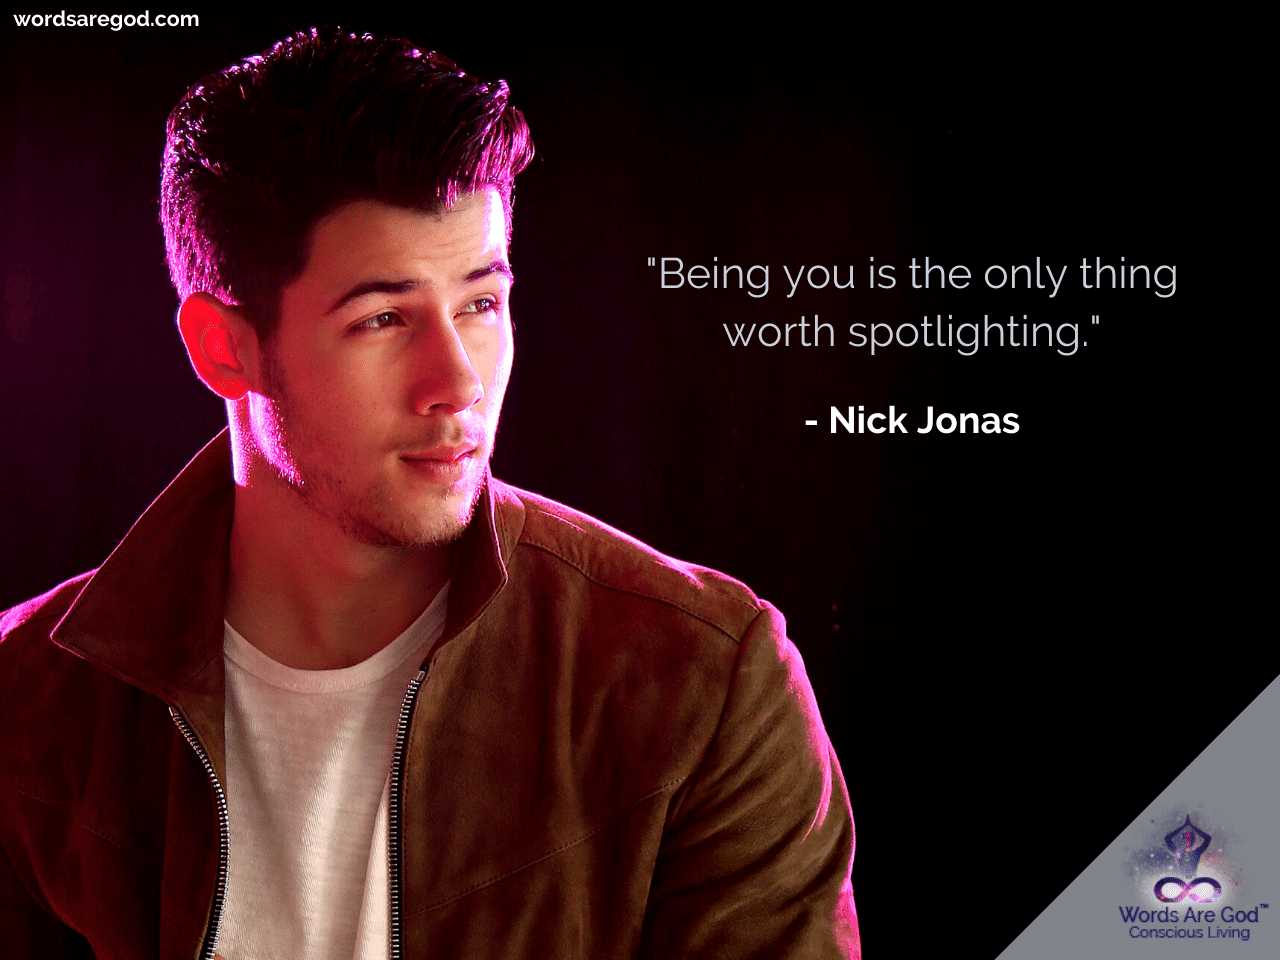 Nick Jonas Inspirational Quote by Nick Jonas